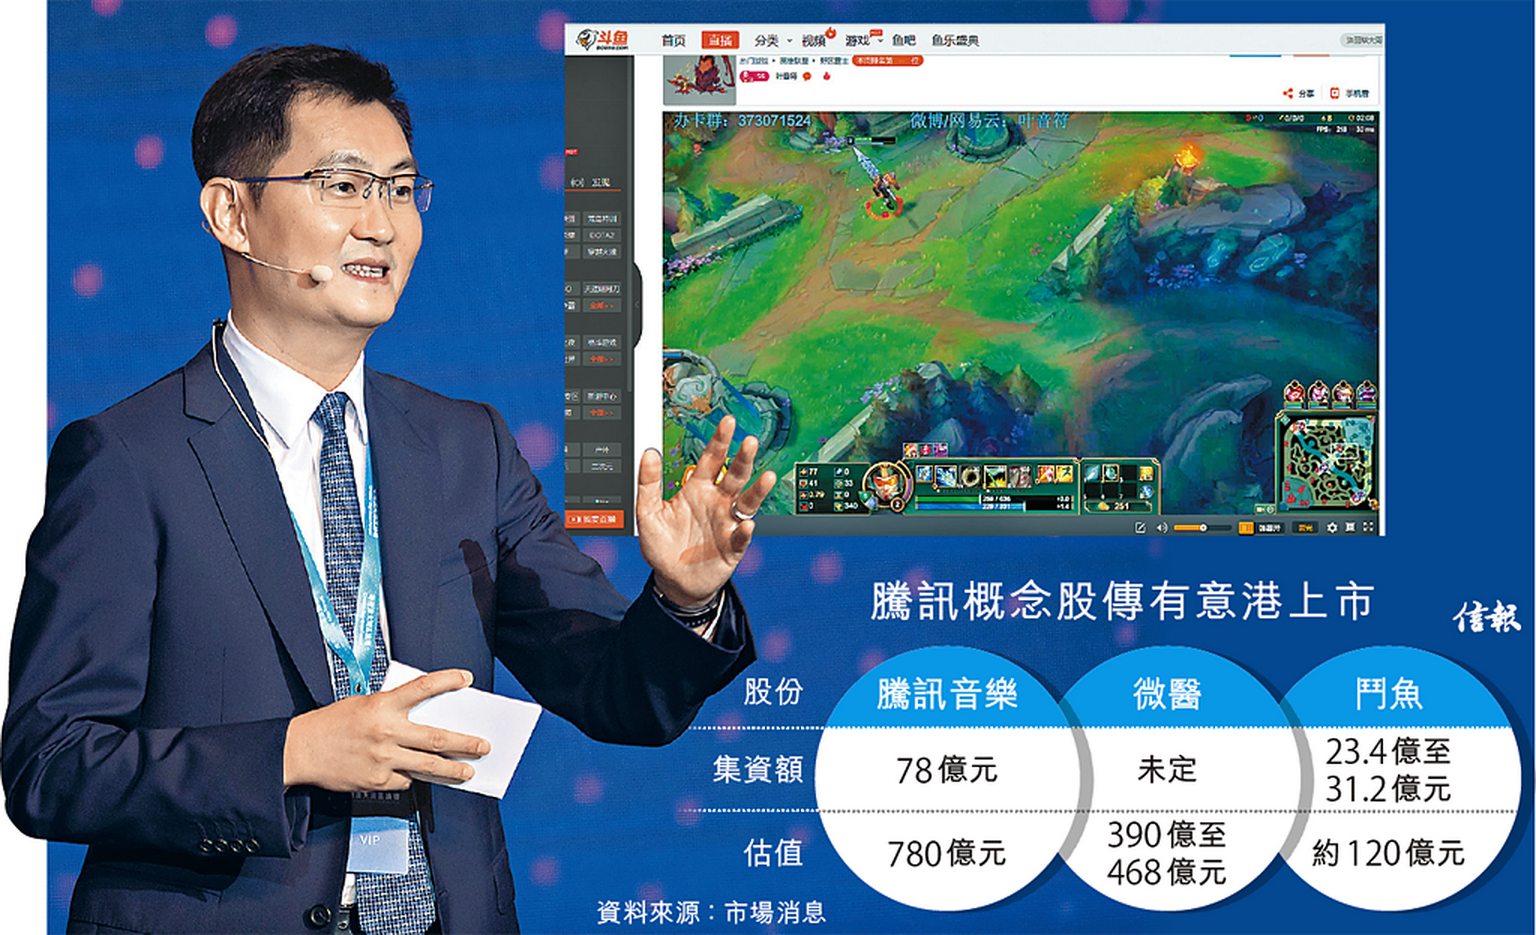 馬化騰掌舵的騰訊，早前已參股的中國網上遊戲直播平台鬥魚，為亞太區增長較快的科技公司之一。